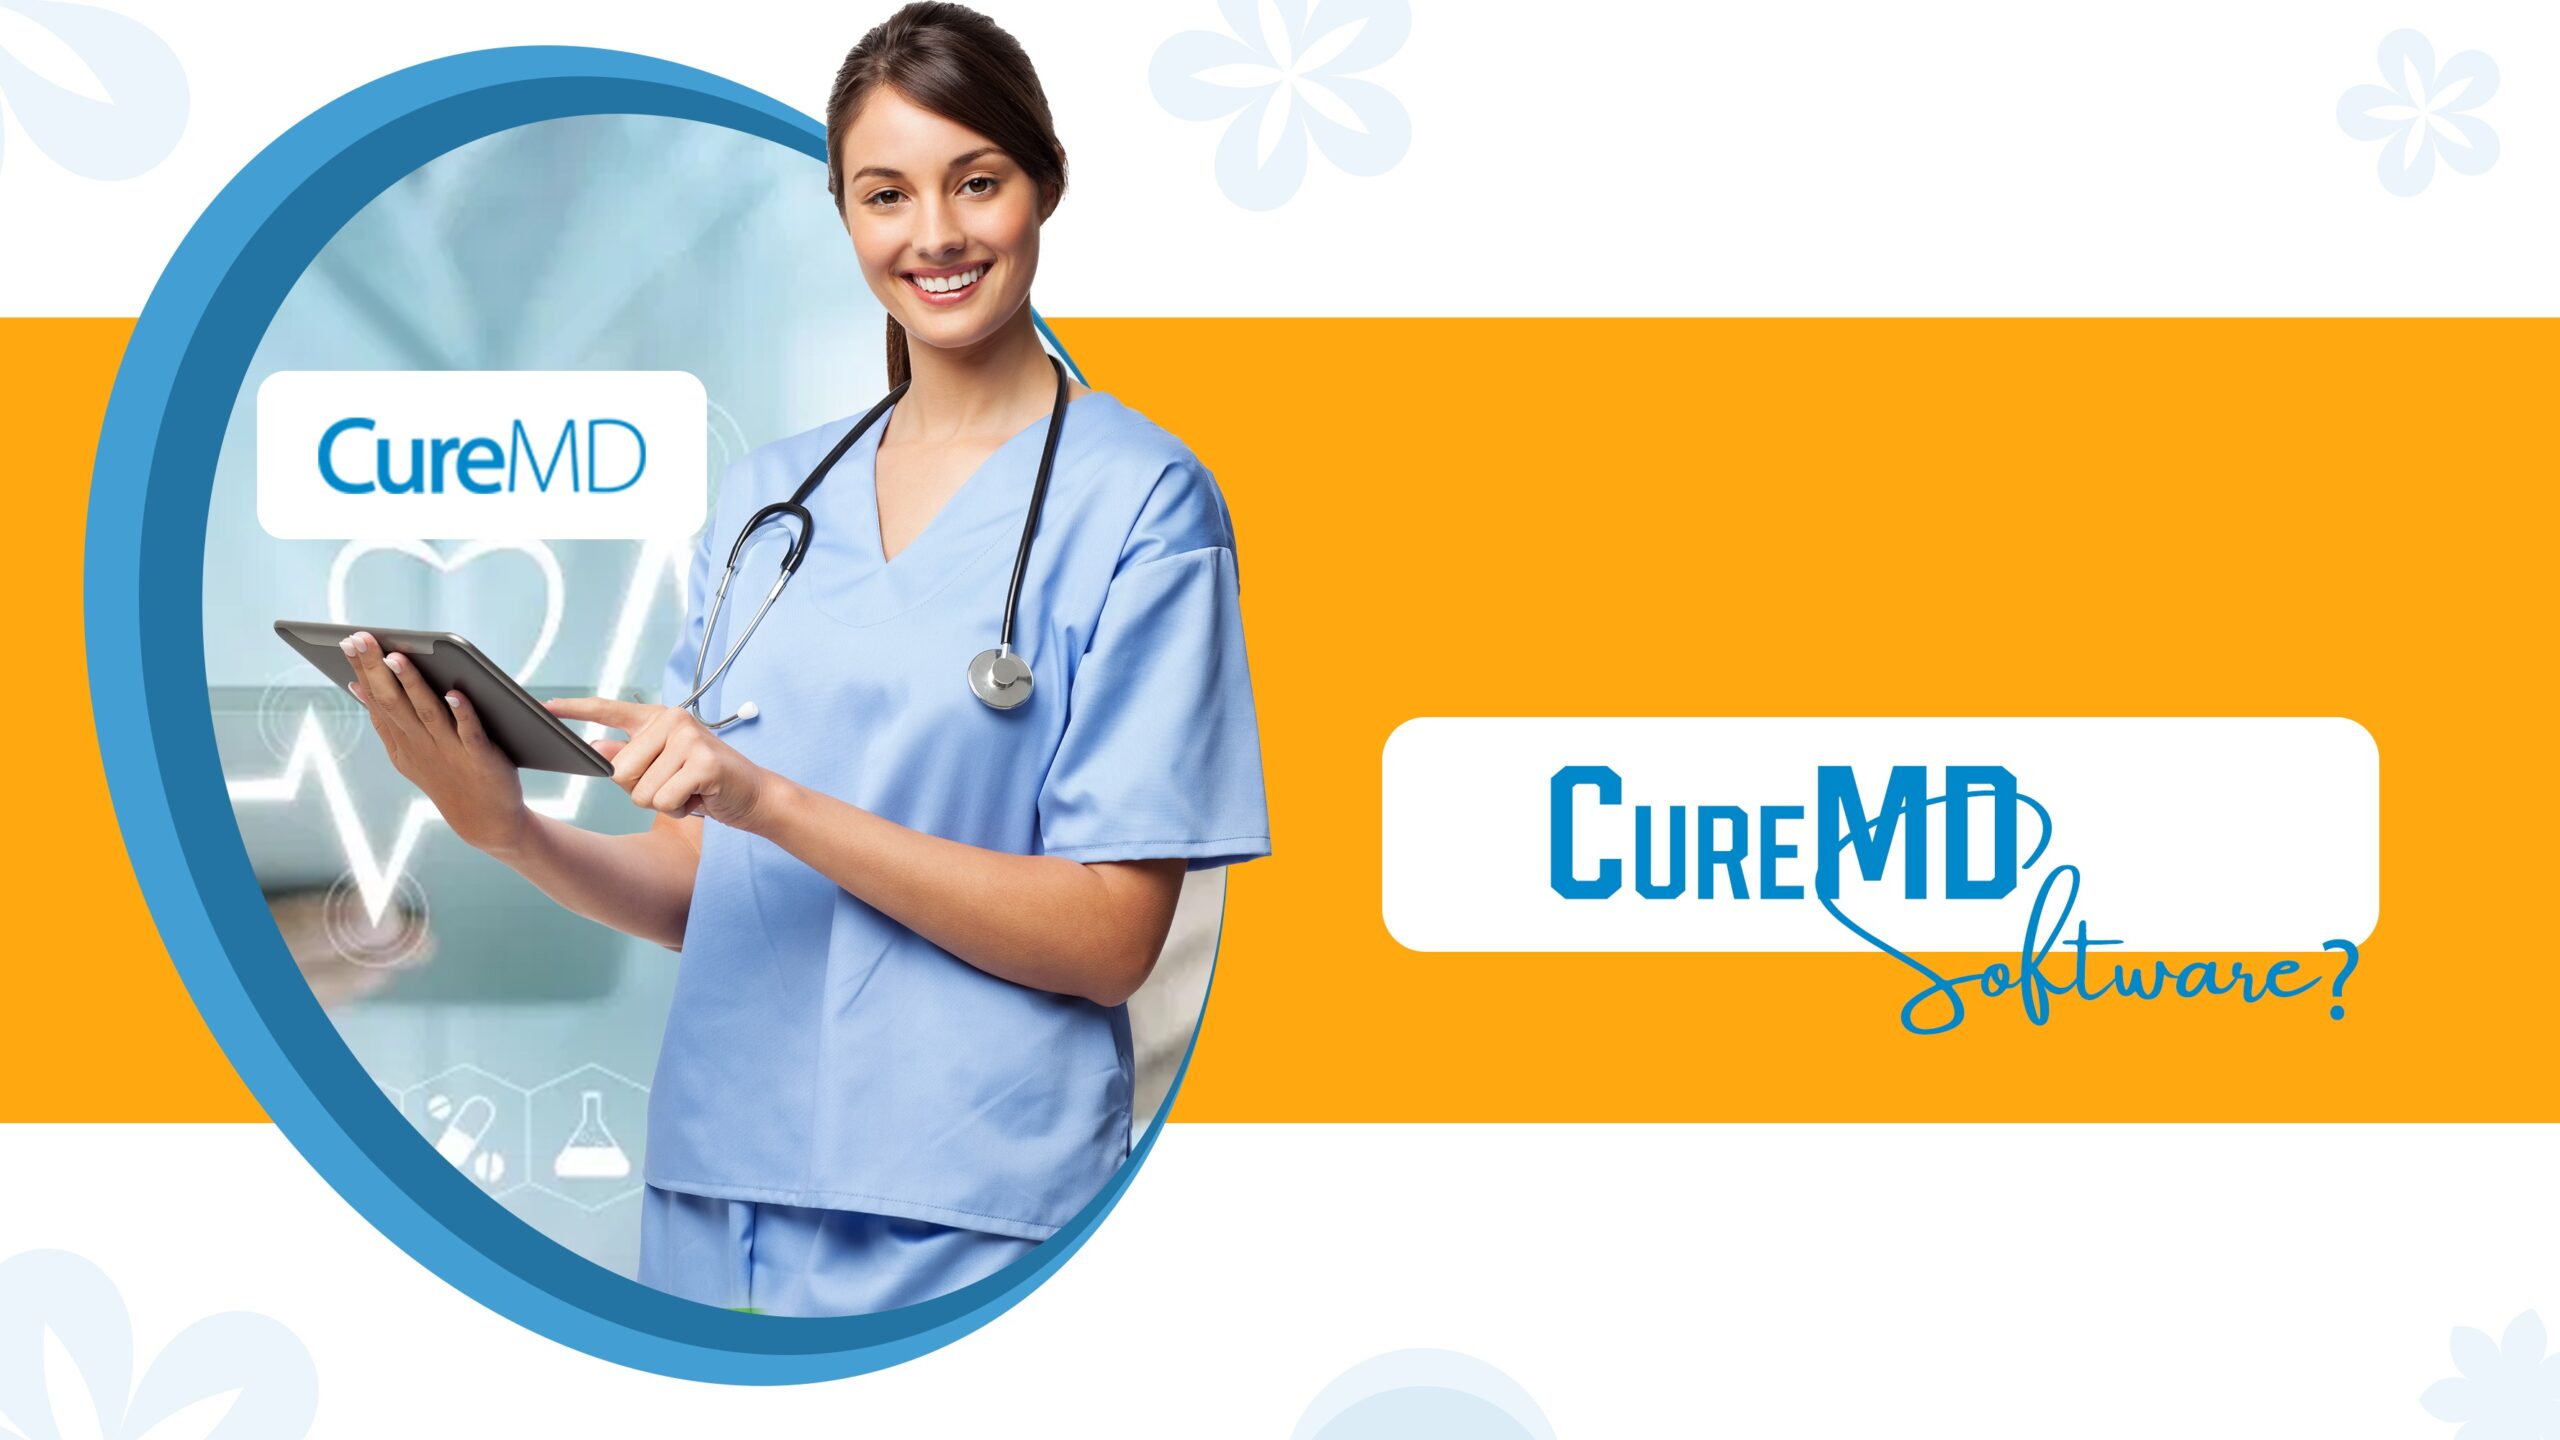 CureMD EMR Software